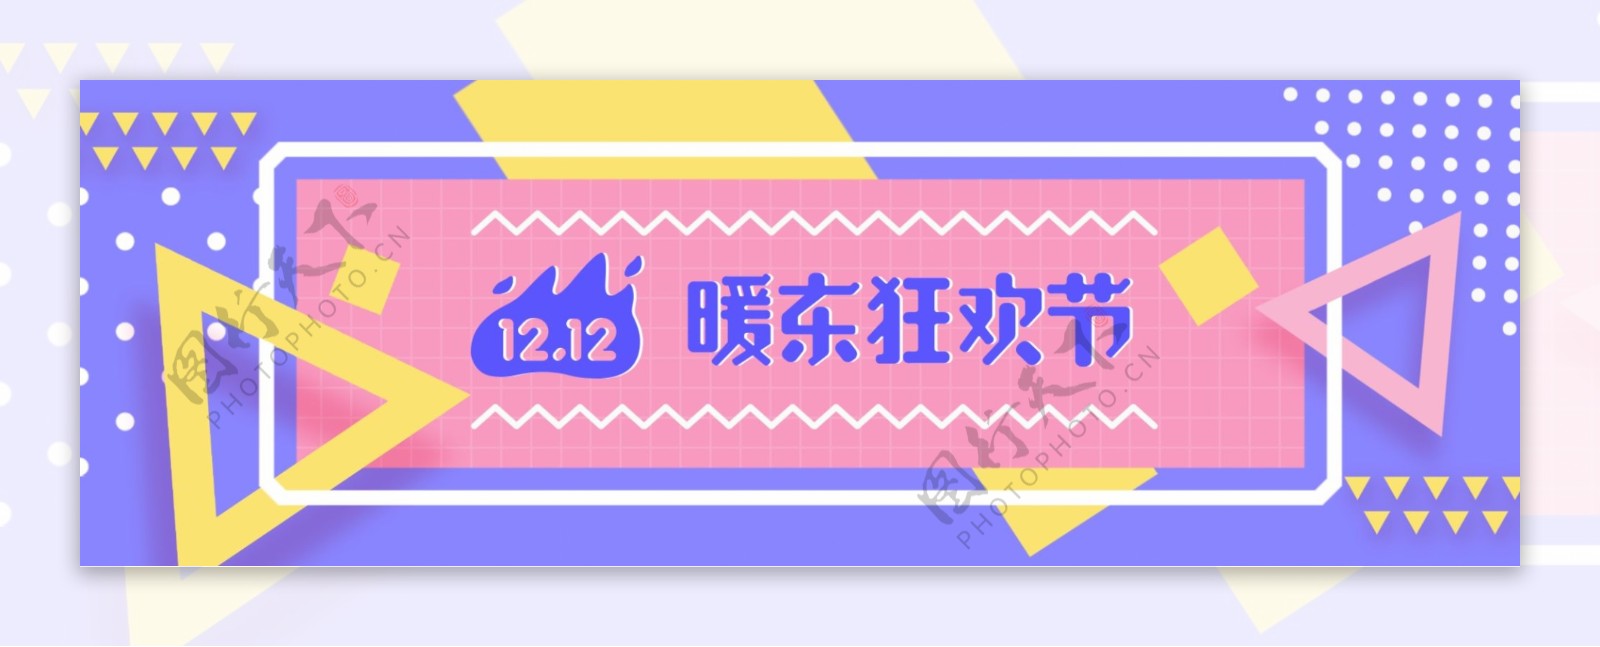 紫粉梦幻京东双12双十二banner